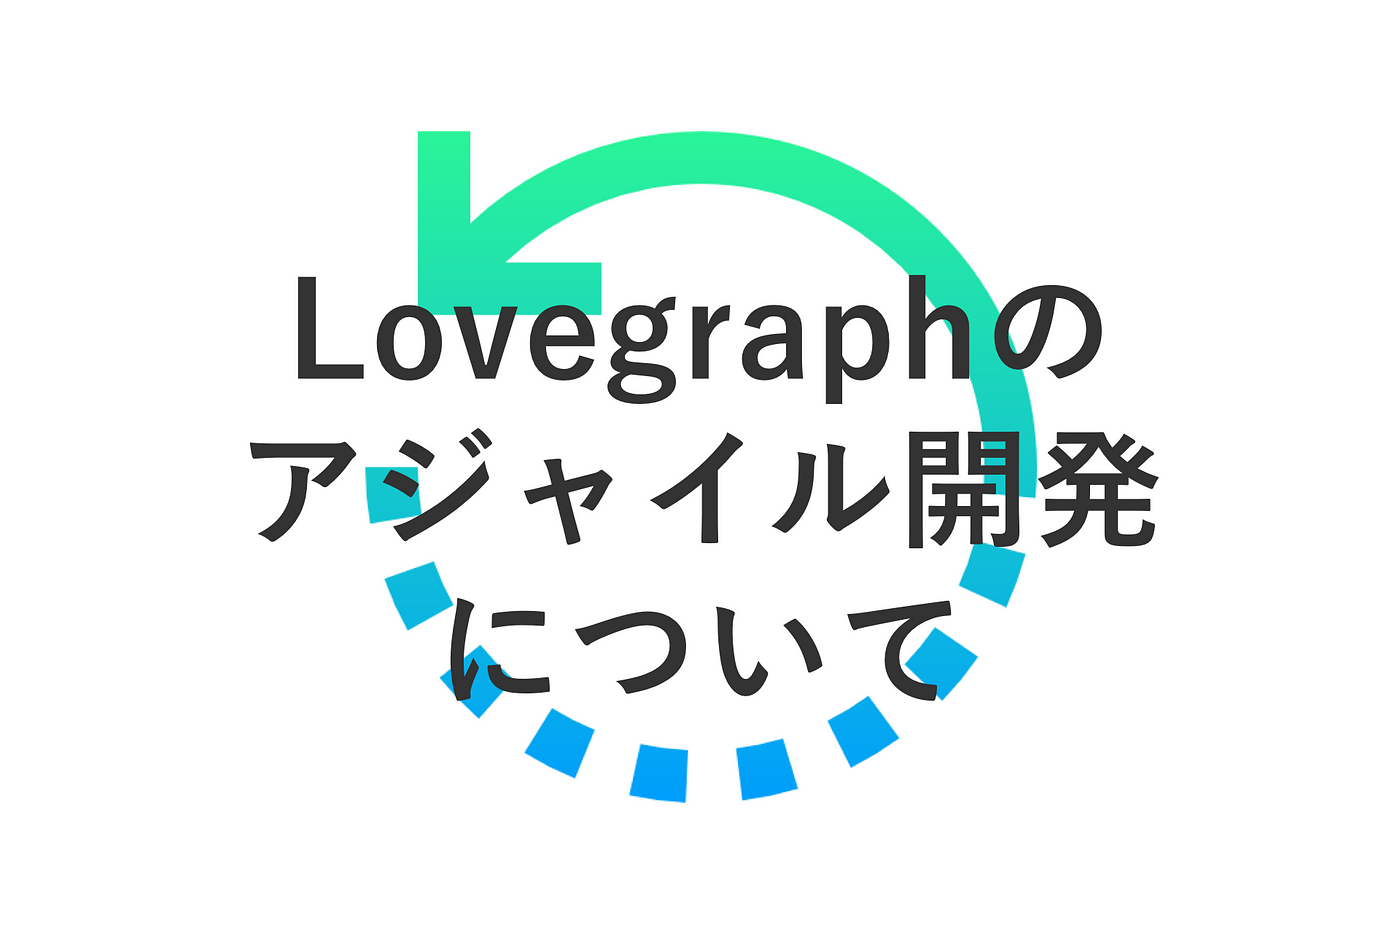 Lovegraphのアジャイル開発について 前置きとして By Soichiro Yoshimura Medium